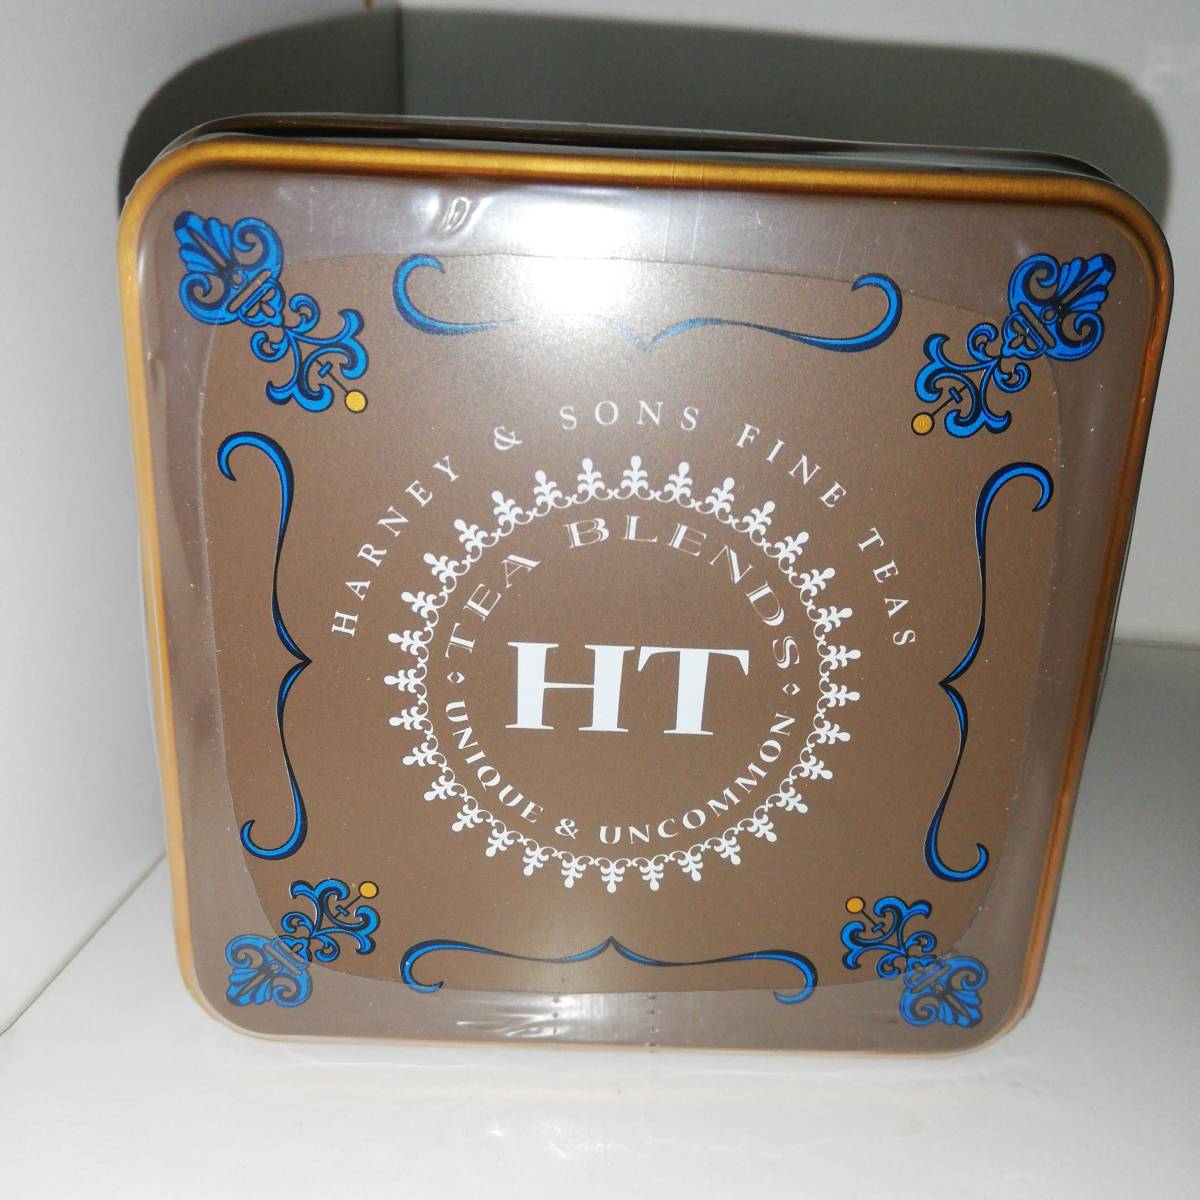 紅茶缶 チョコレートミント ティーバッグ20袋 40g Harney & Sons ハーニー&サンズ【新品・送料込】